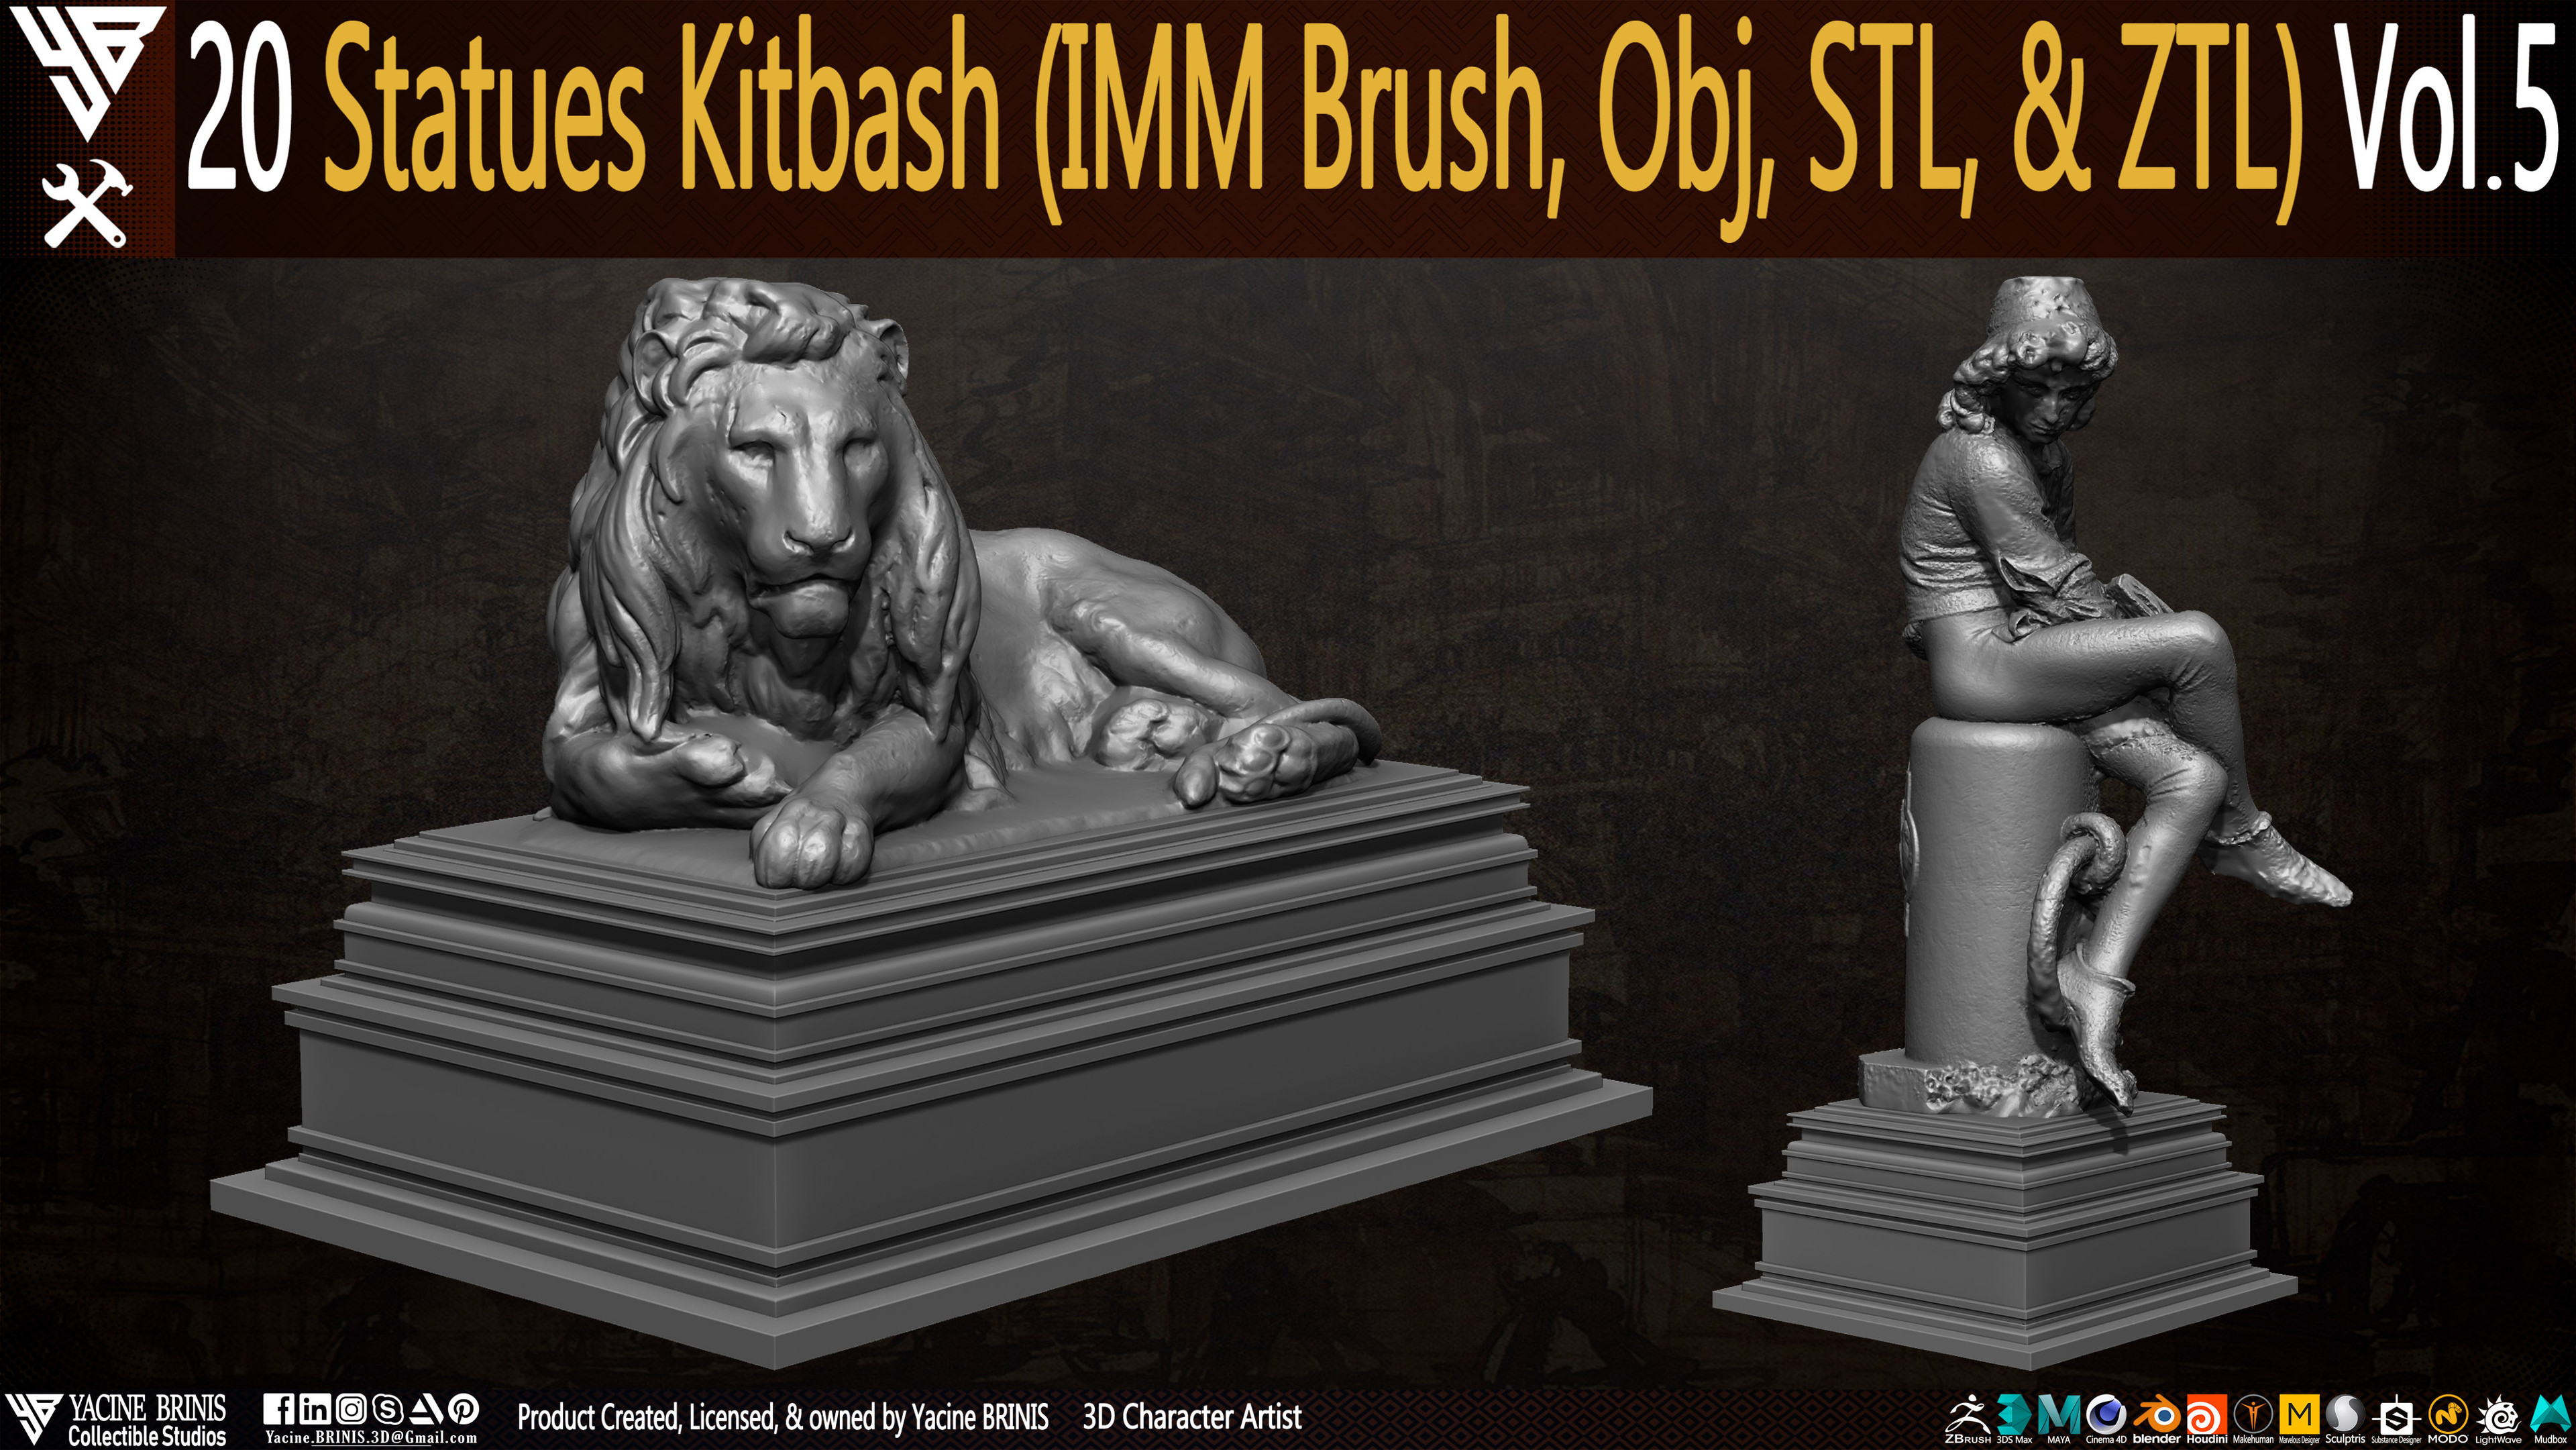 Statues Kitbash by yacine brinis Set 26